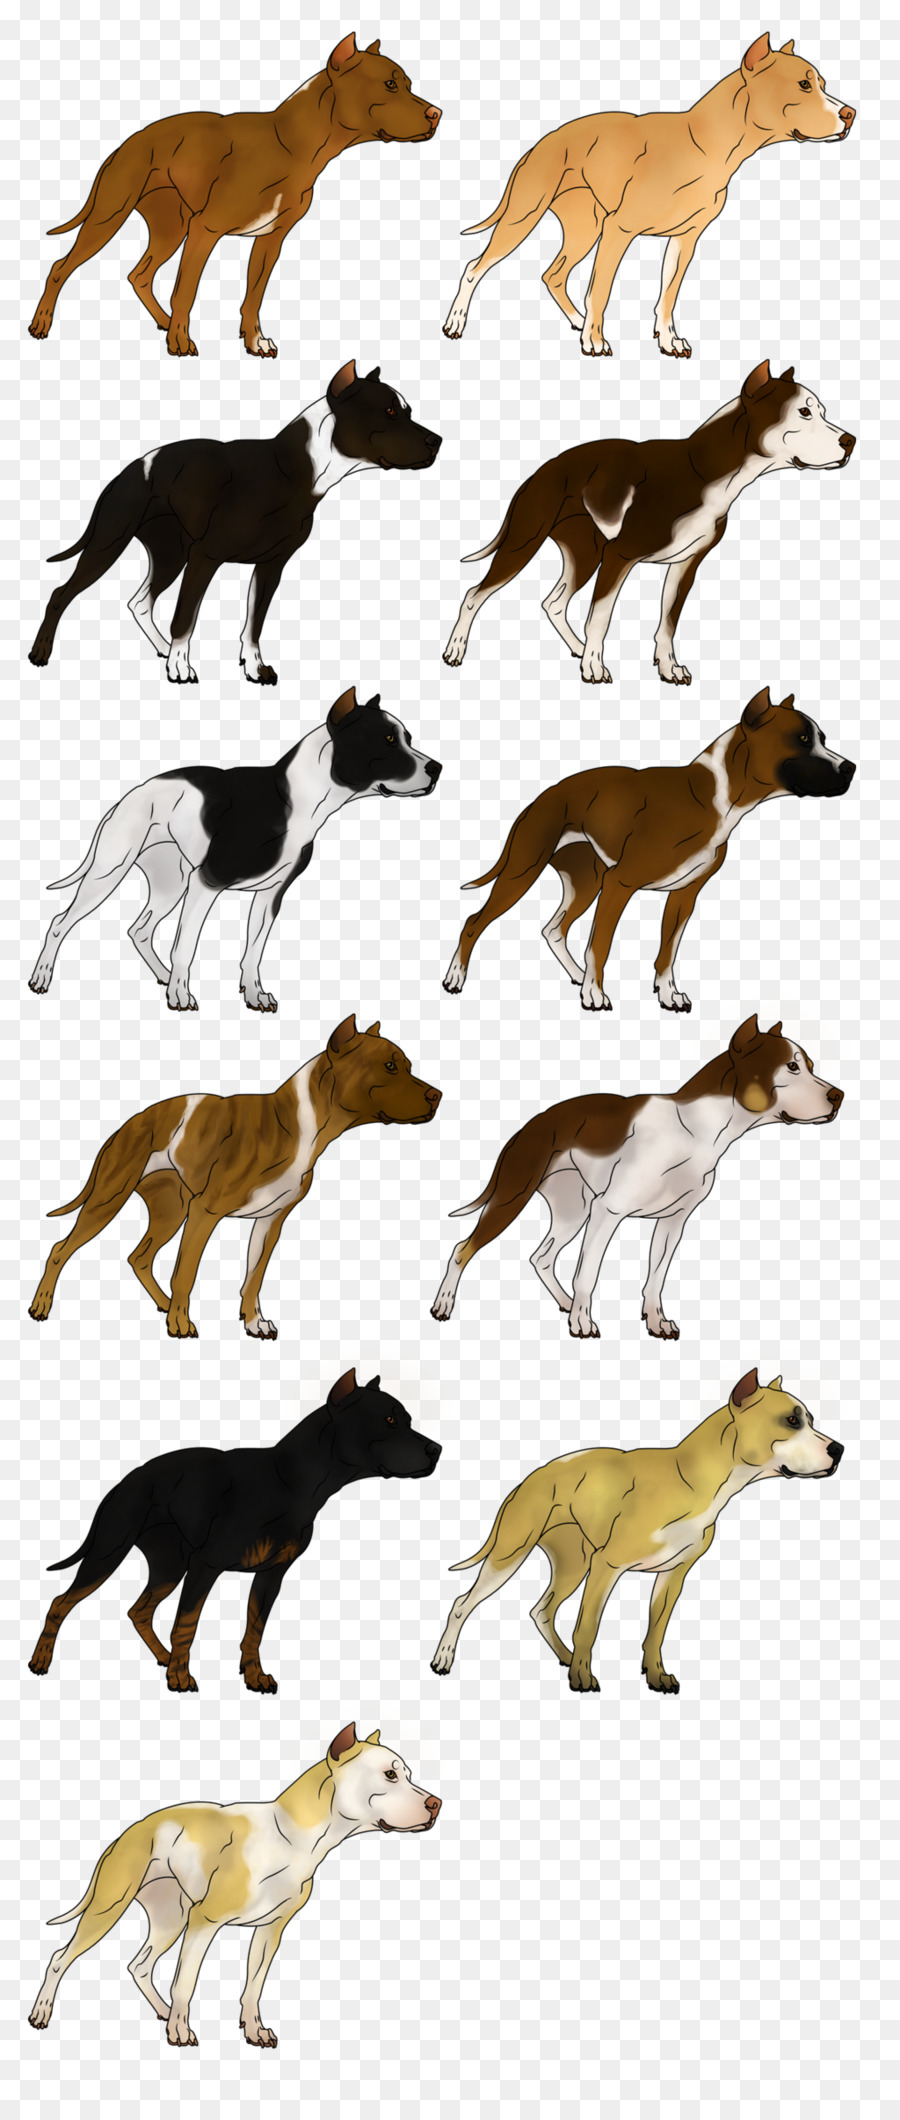 American Pit Bull Terrier American Bulldog Game - pitbull png download - 1024*2400 - Free Transparent American Pit Bull Terrier png Download.